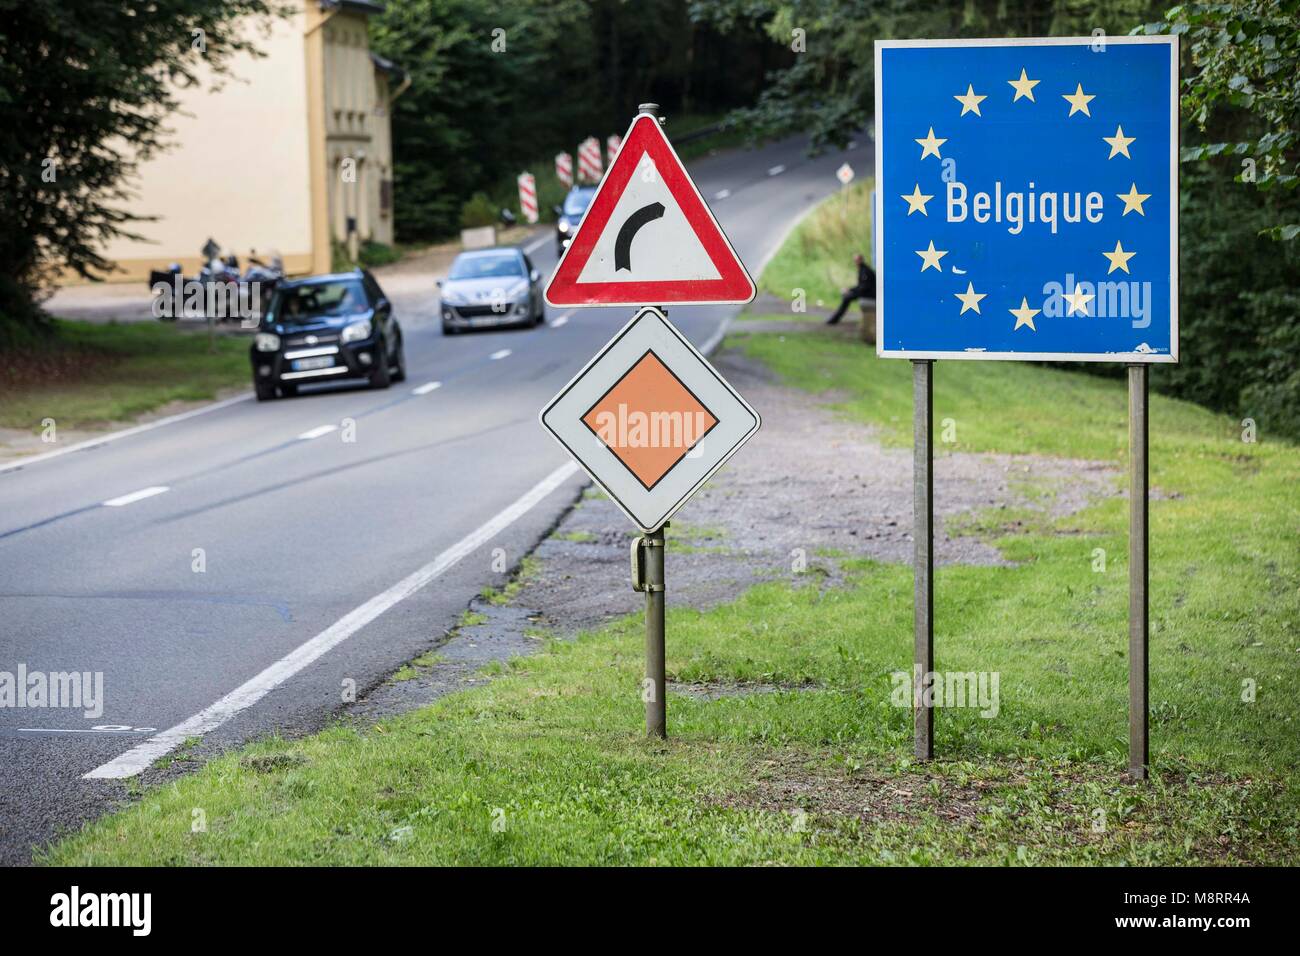 Ein blaues Schild mit dem Schriftzug Belgique umrandet von goldenen UE-Sternen symbolisiert den Grenzübertritt nach Belgien auf dieser Landstrasse in Foto Stock